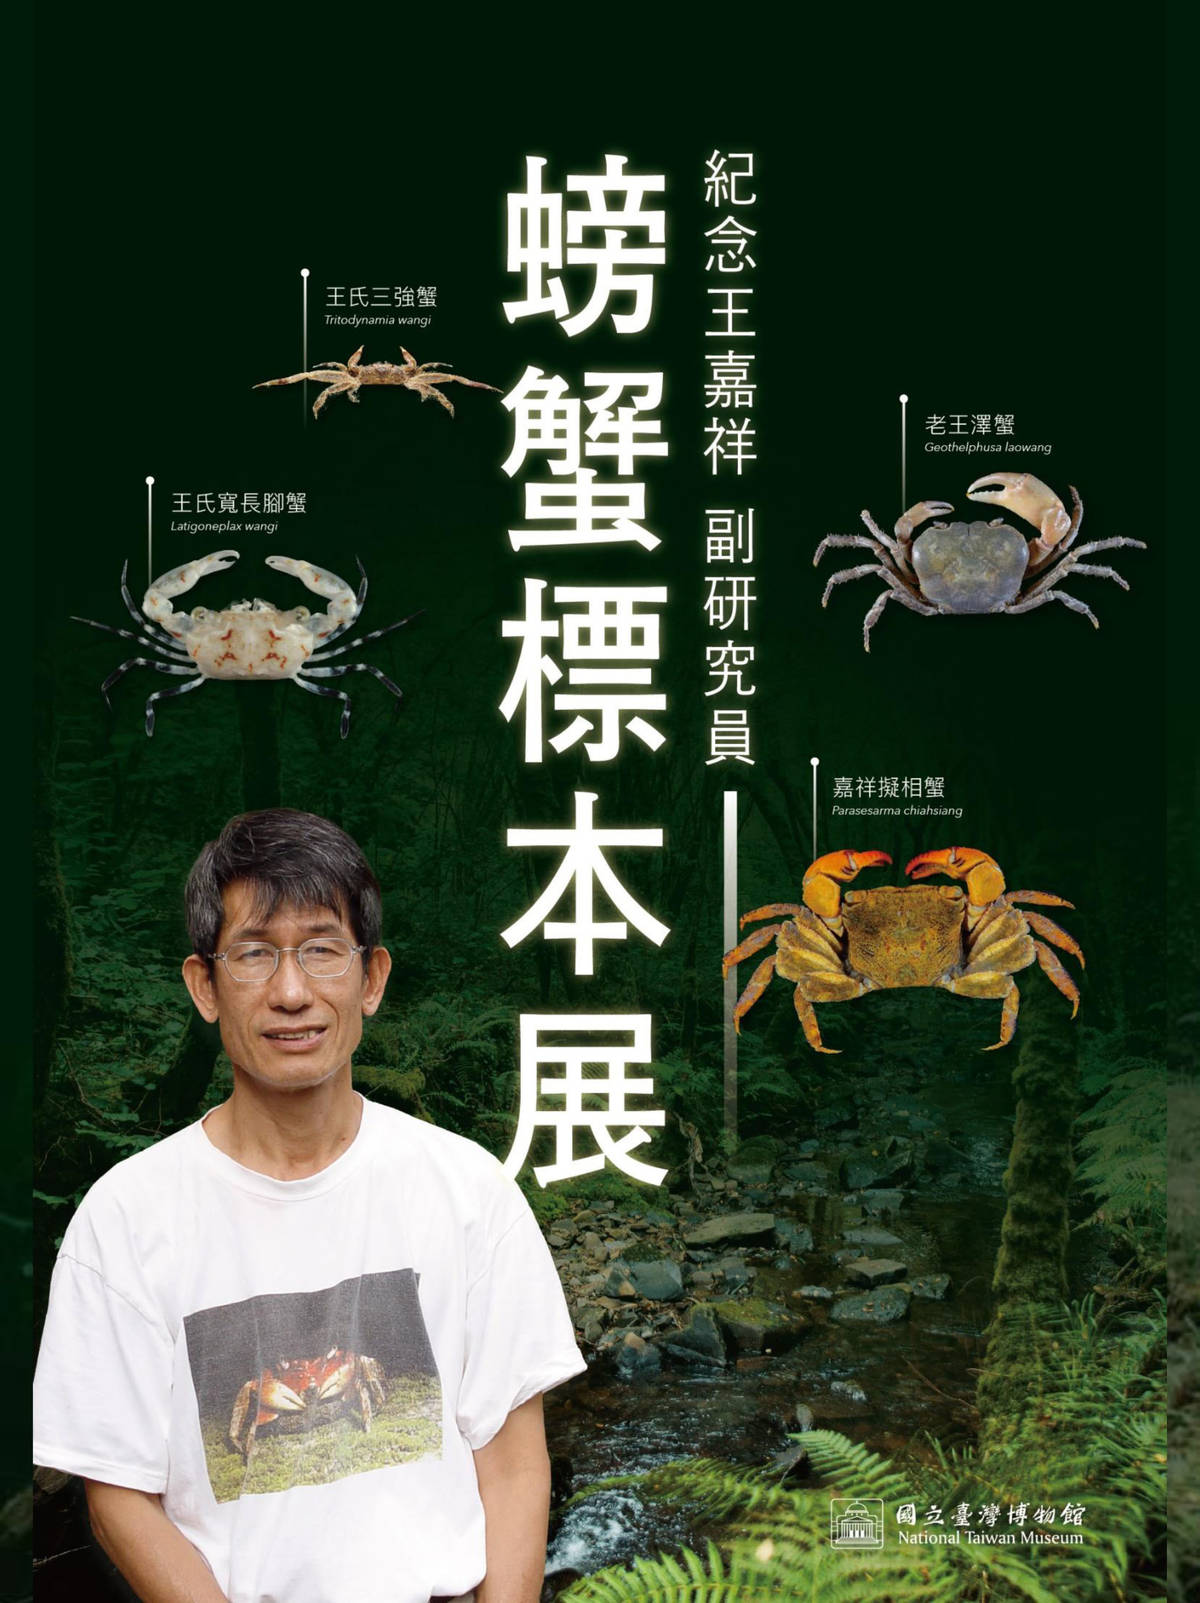 紀念王嘉祥副研究員螃蟹標本展海報。(臺博館提供)